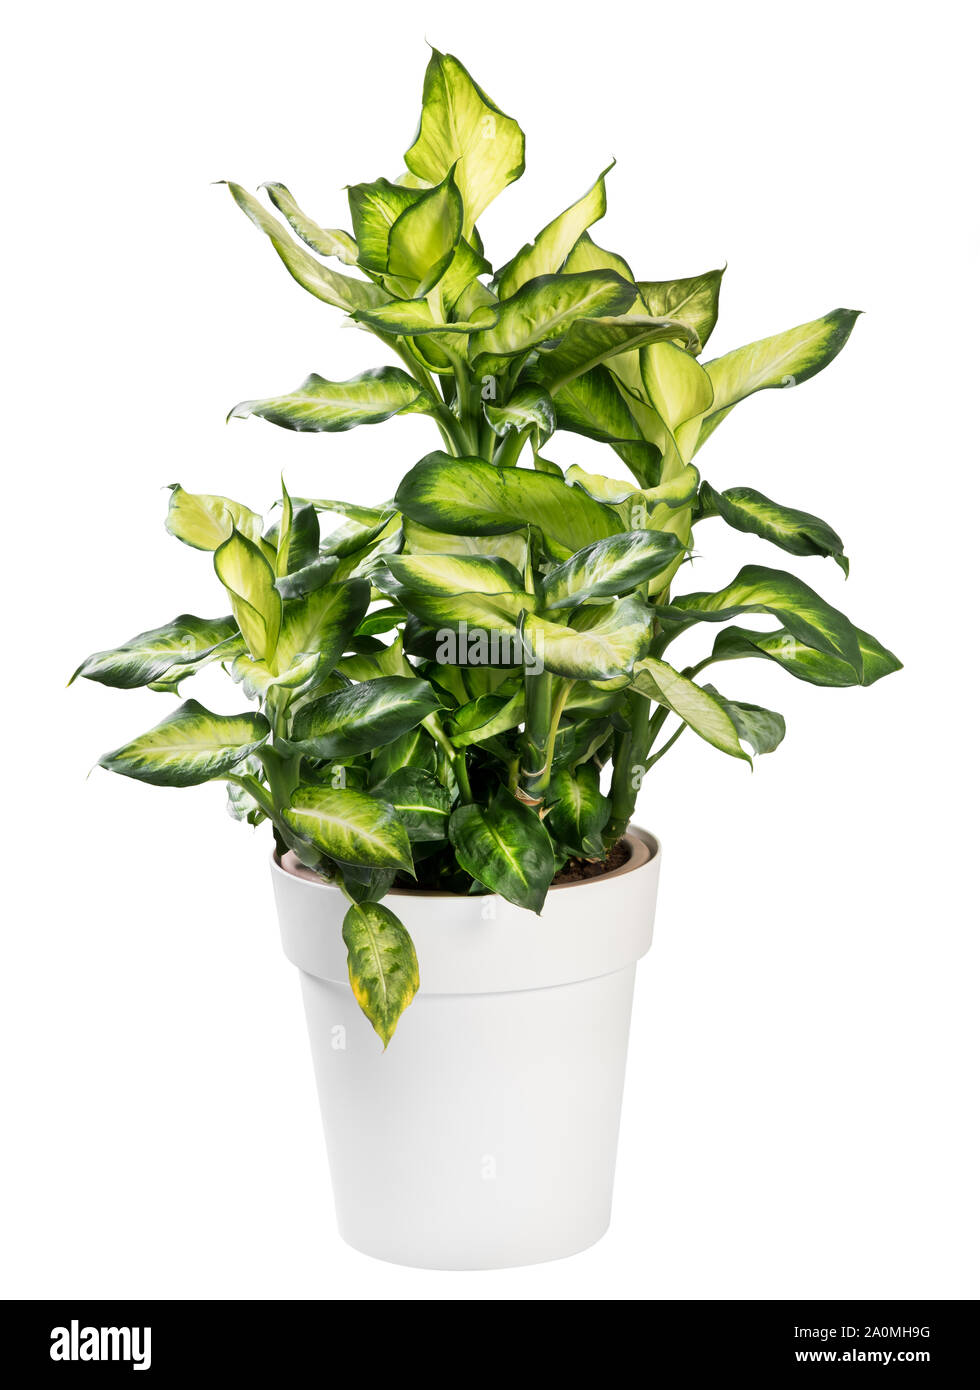 En pot plantes panachées Dieffenbachia avec ses feuilles tropicaux décoratifs populaires comme une plante d'isolated on white Banque D'Images